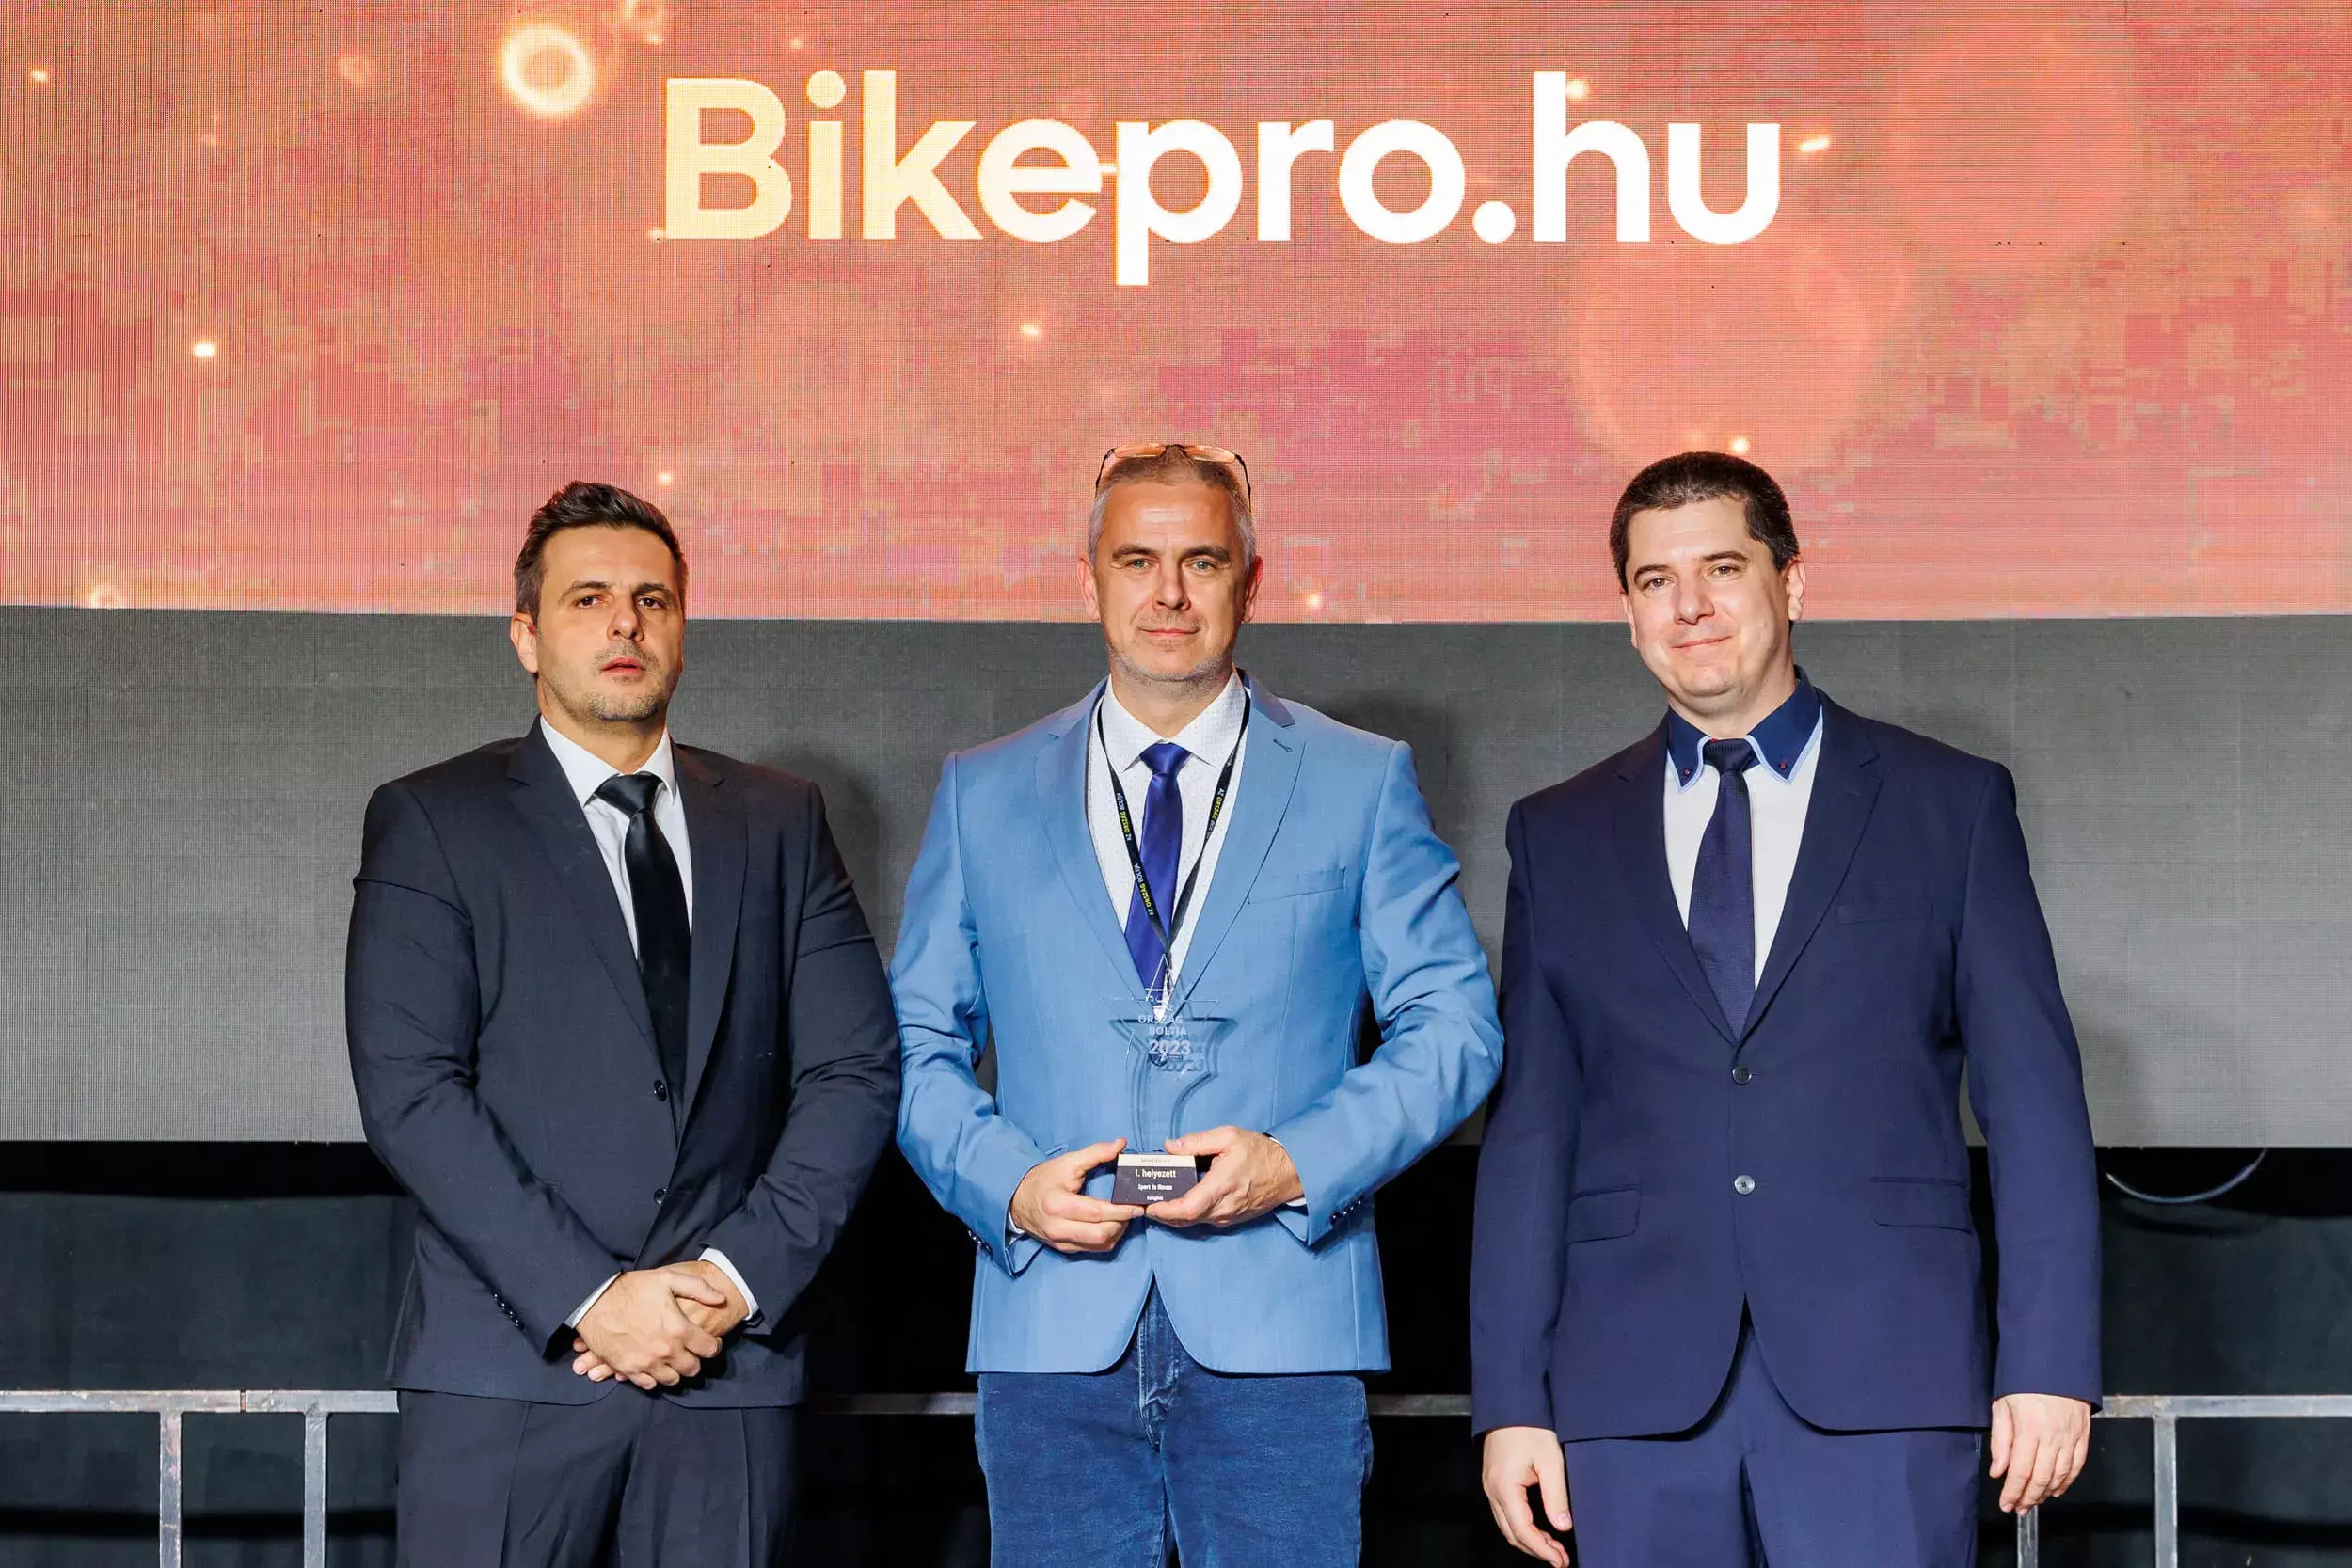 Ország Bolja díjátadó gála 2023 - bikepro.hu minőségi díj 1. helyzett.